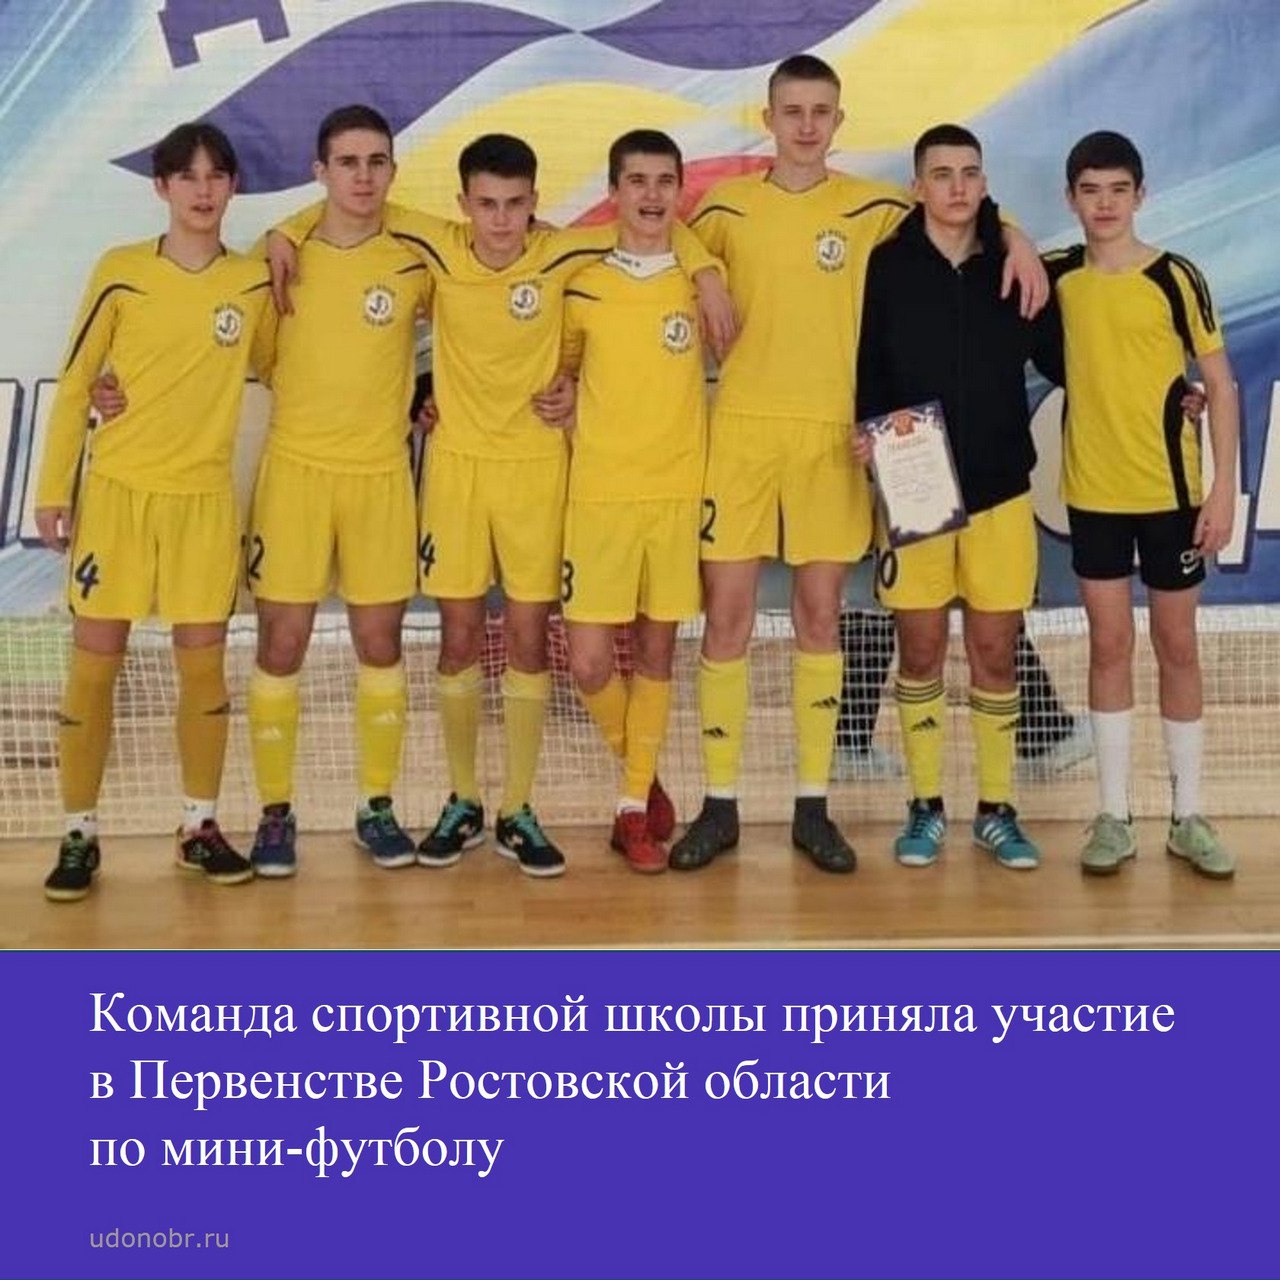 Команда спортивной школы приняла участие в Первенстве Ростовской области по мини-футболу